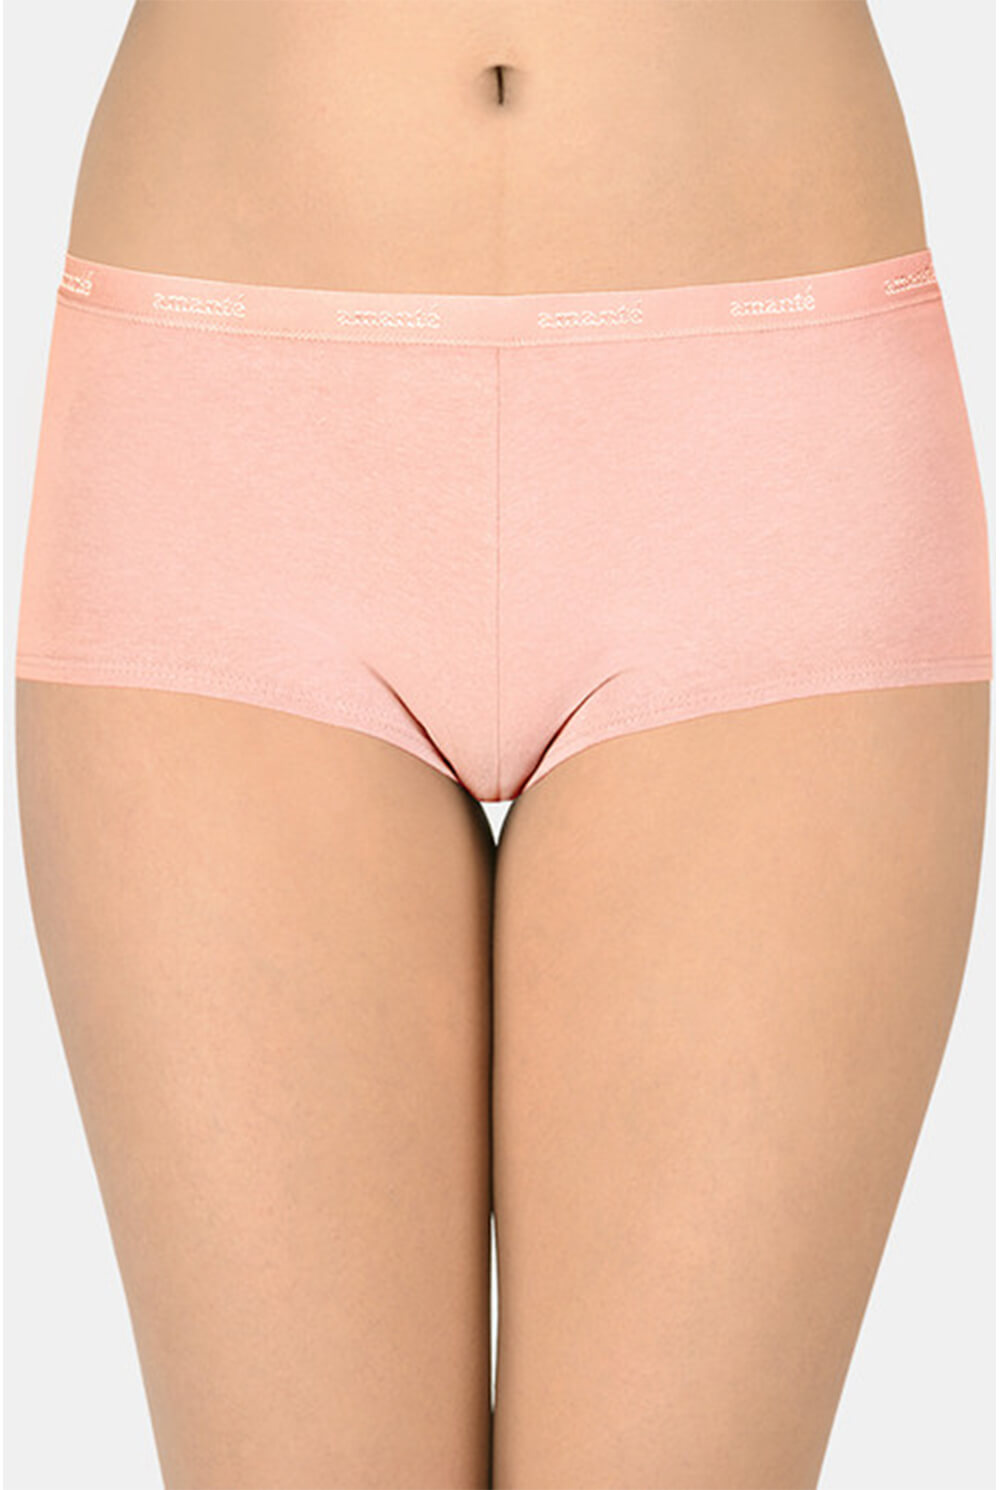 Shop for amanté Ladies Underwear. Online Shopping Sri Lanka. Cash